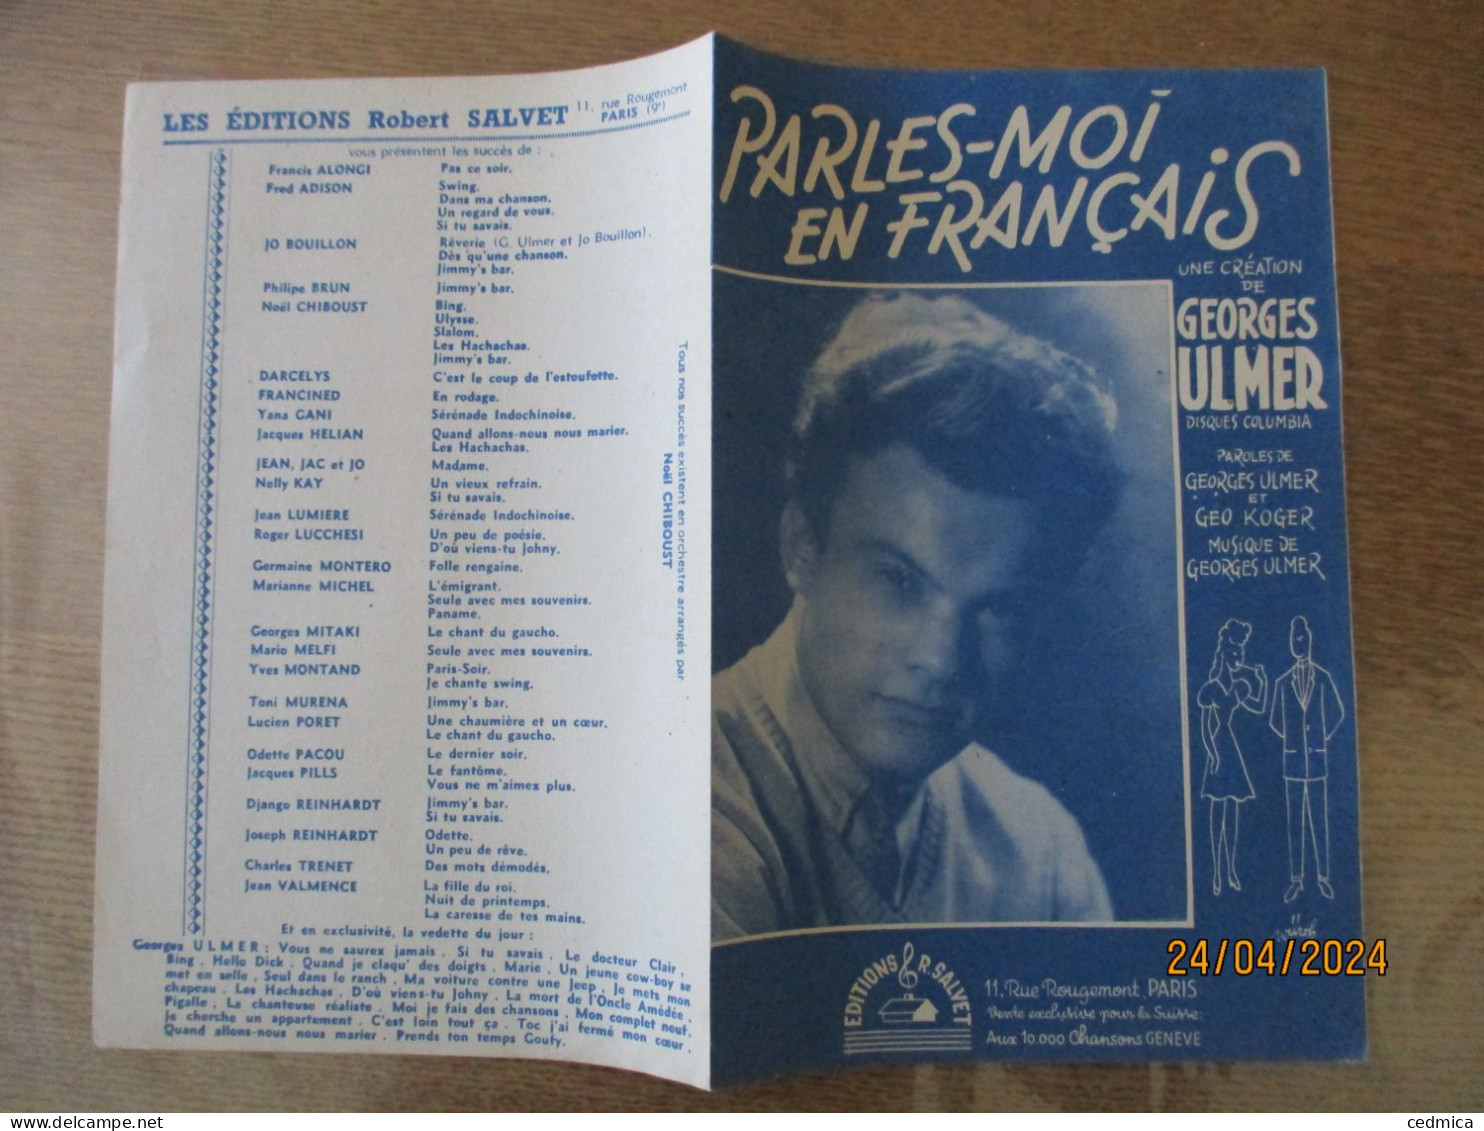 PARLE-MOI EN FRANCAIS....PAROLES DE GEORGES ULMER & GEO KOGER MUSIQUE DE GEORGES ULMER - Scores & Partitions